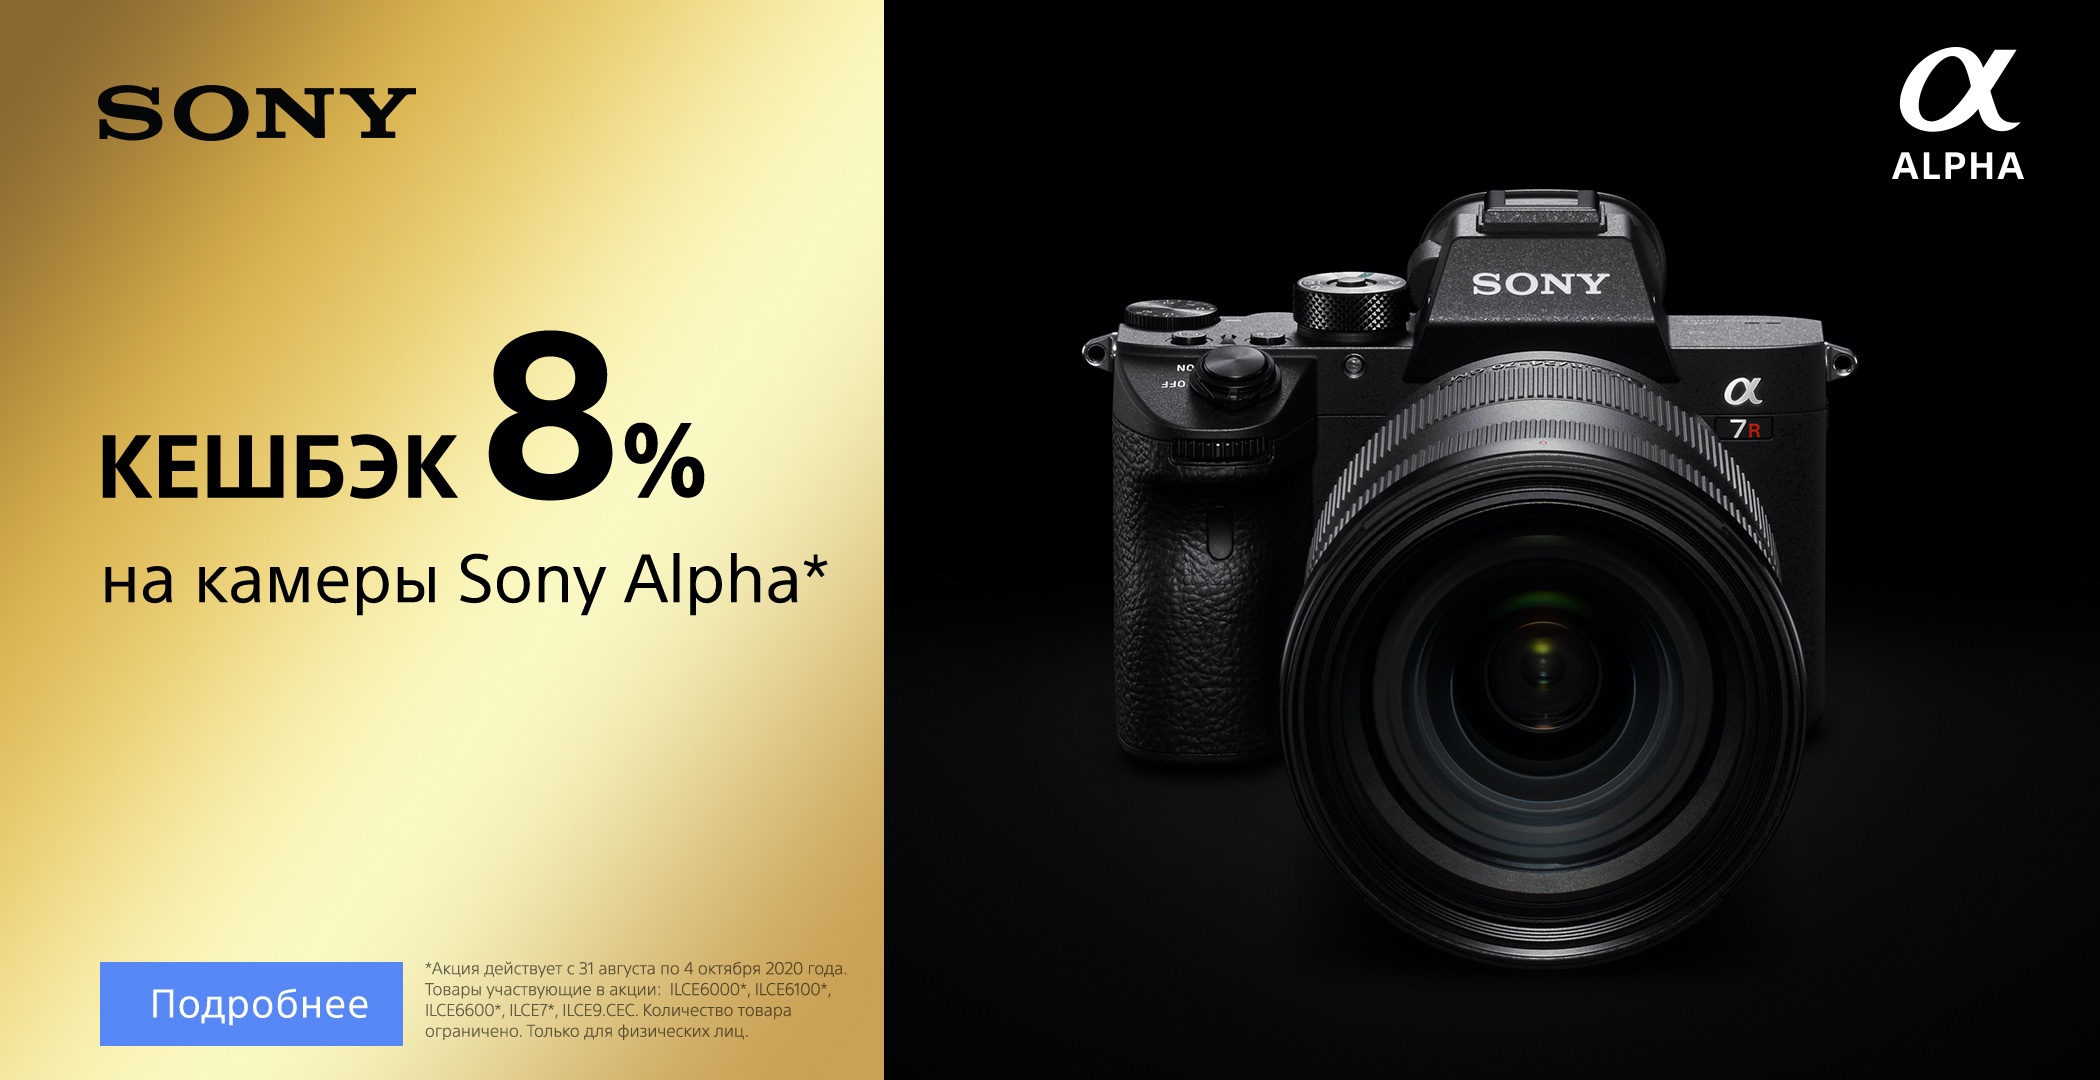 Кешбэк 8% на камеры Sony Alpha